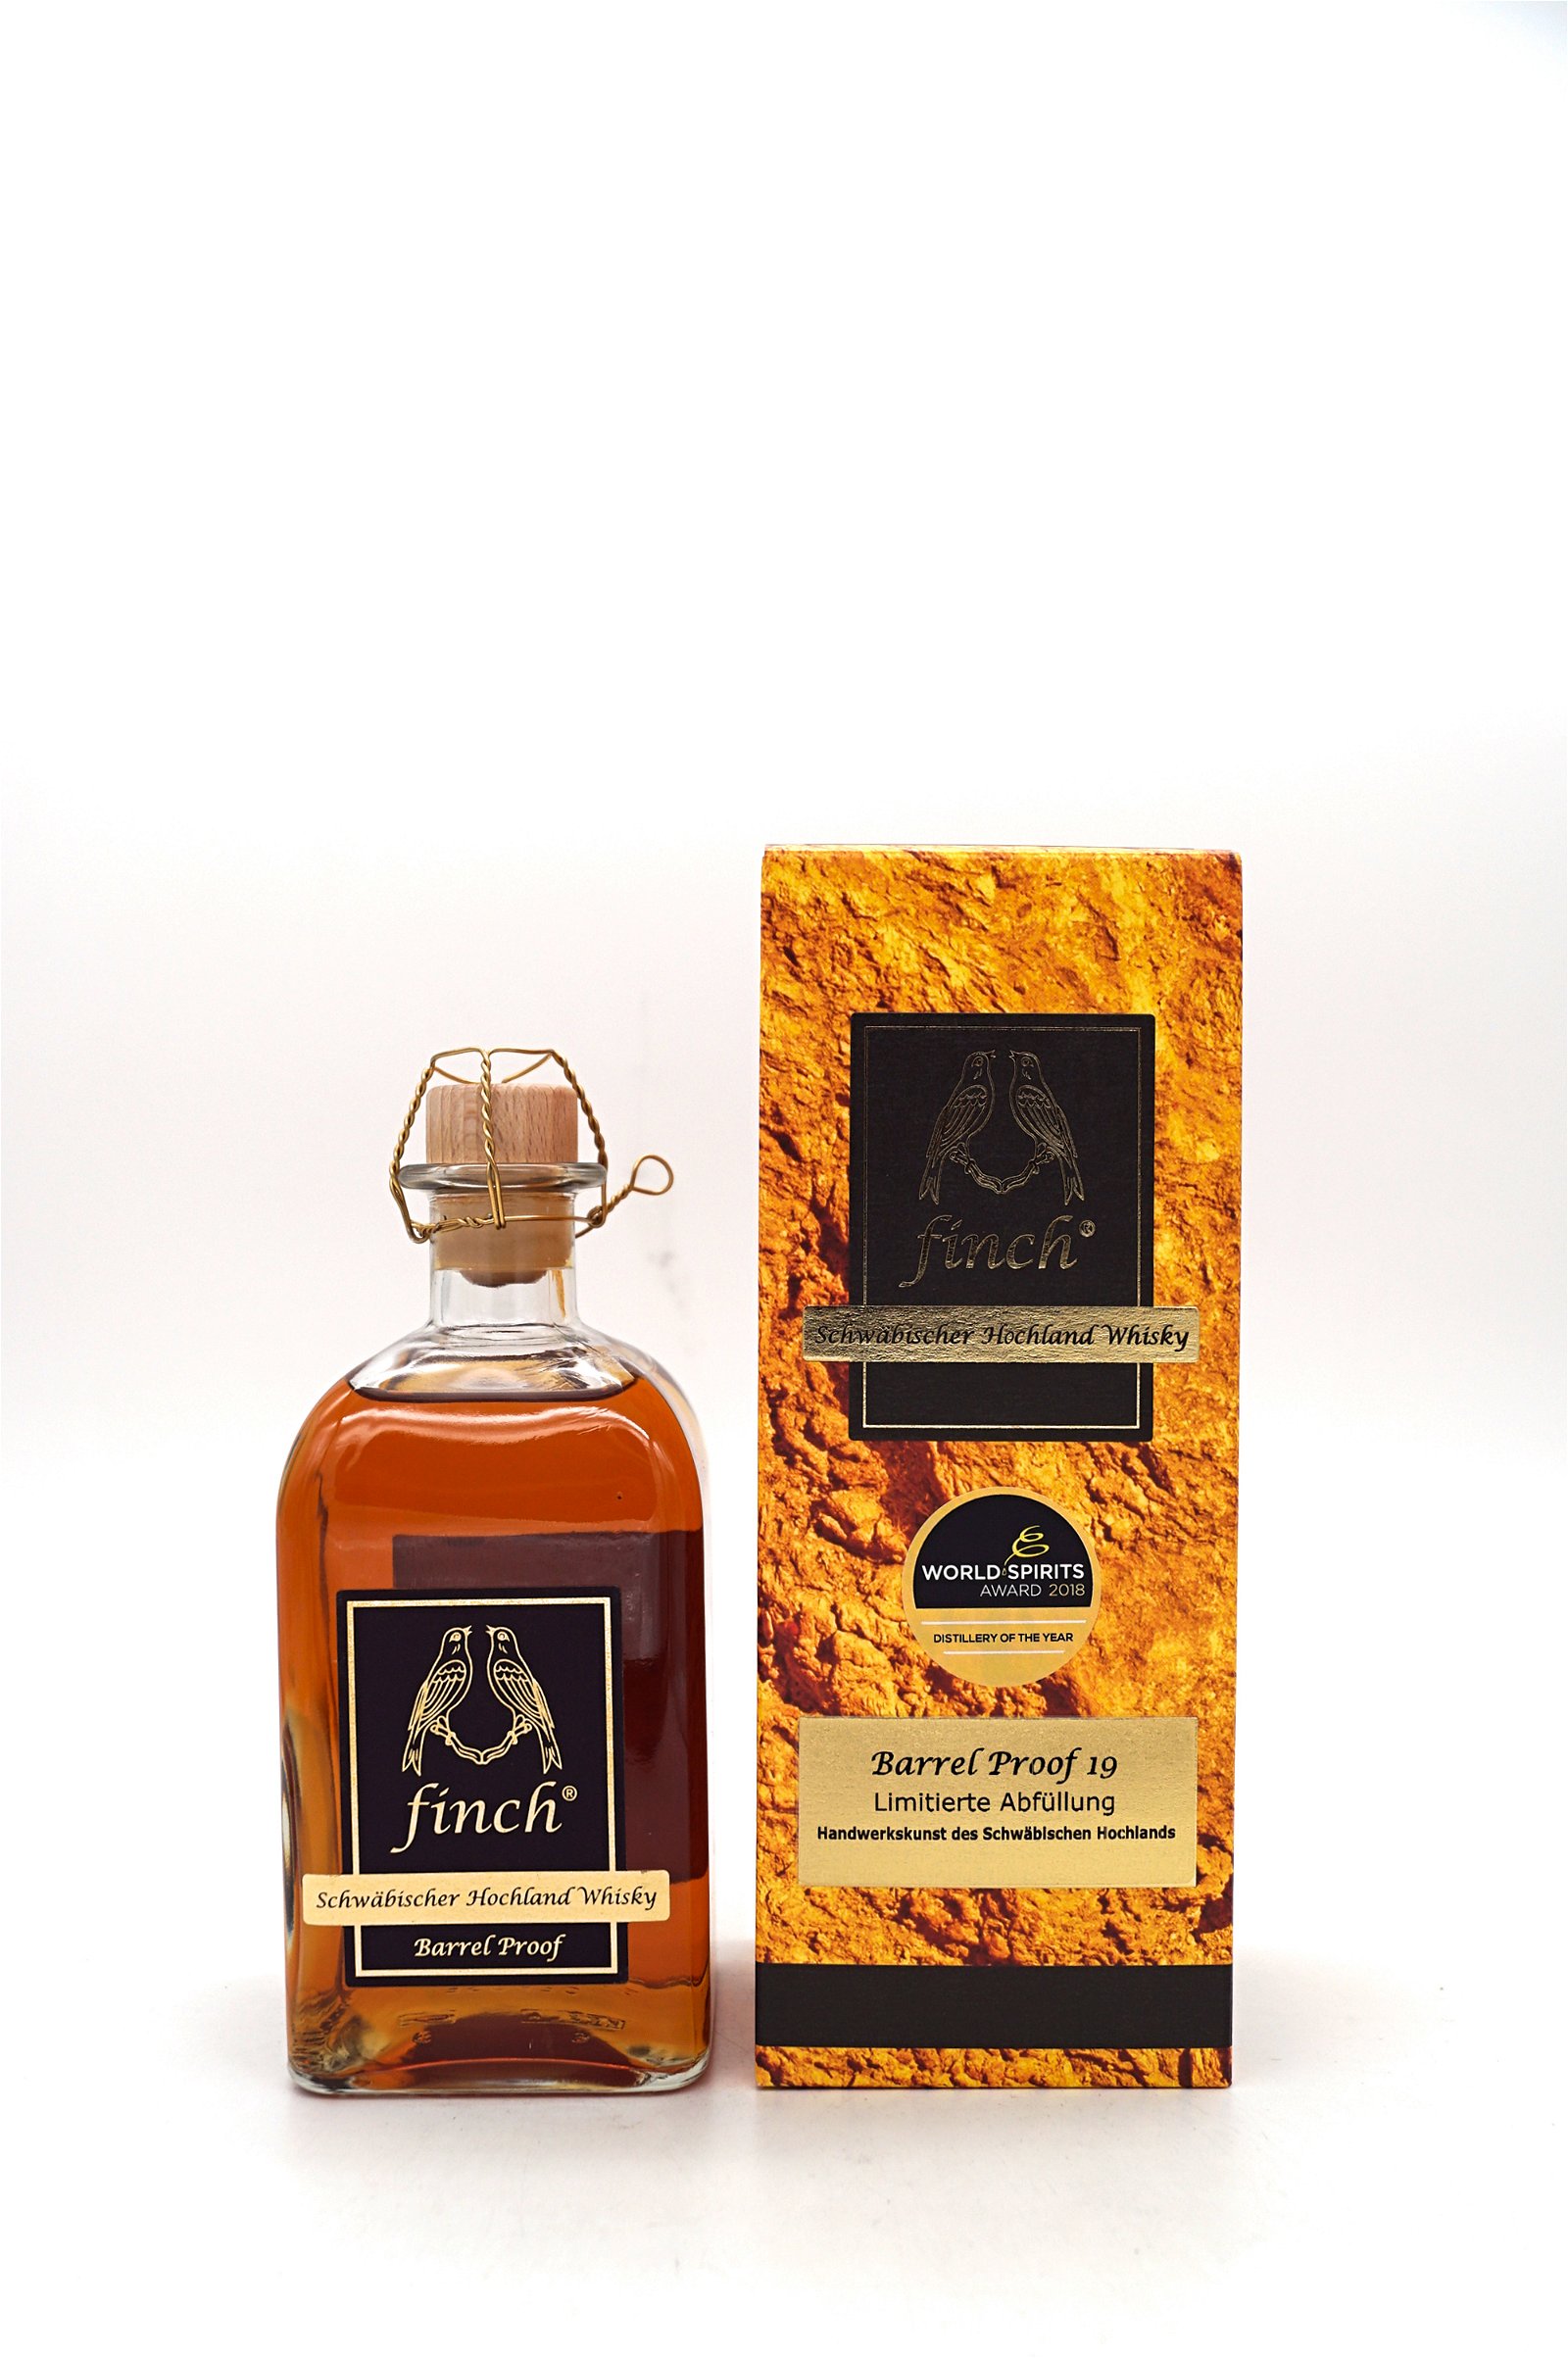 Finch Barrel Proof 19 Limitierte Abfüllung Schwäbischer Hochland Whisky